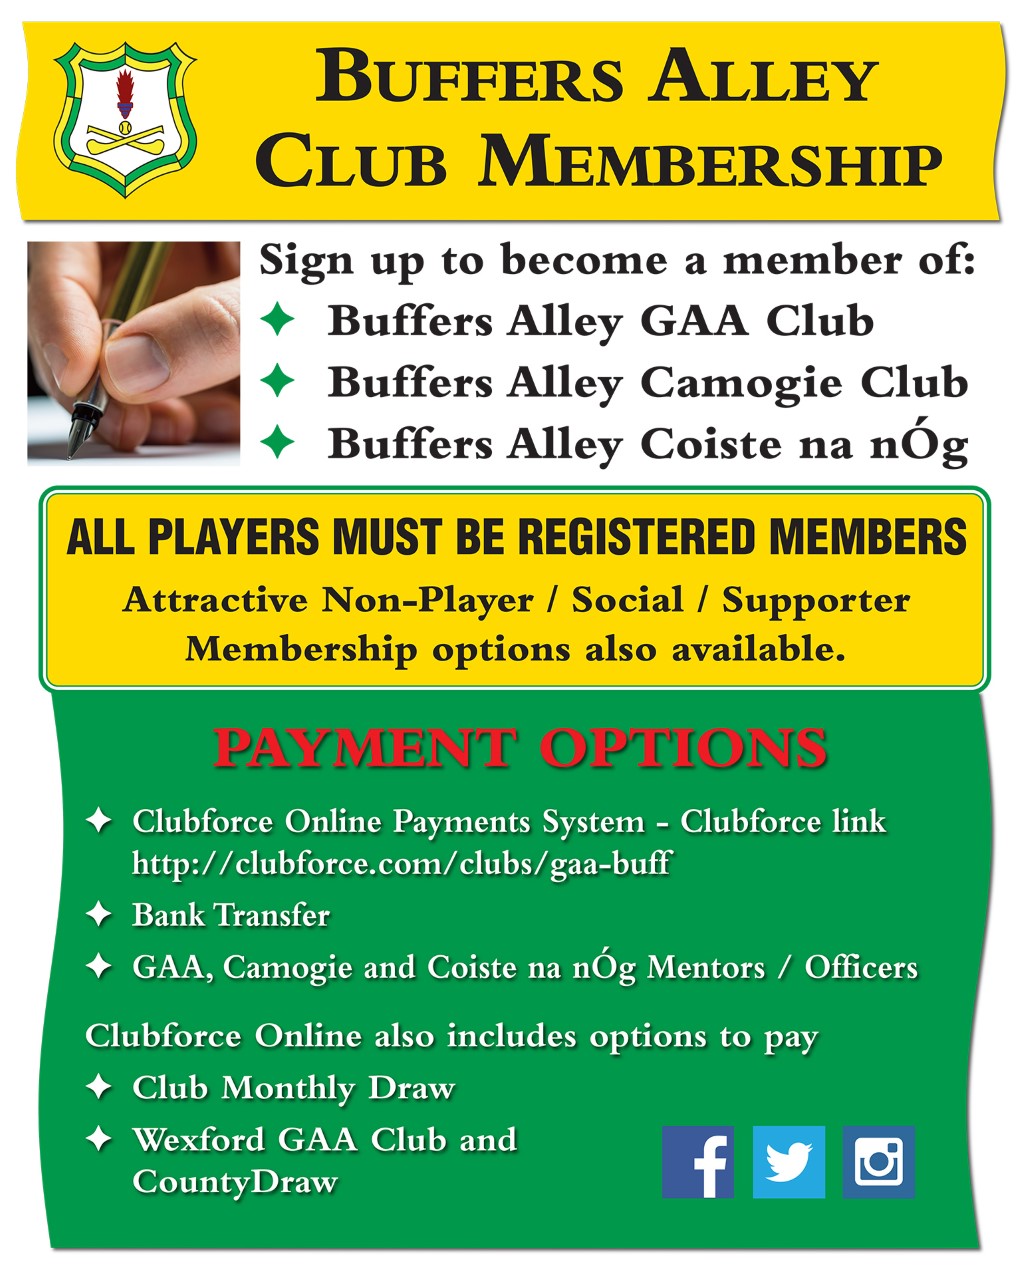 Club Membership/Draws, etc.